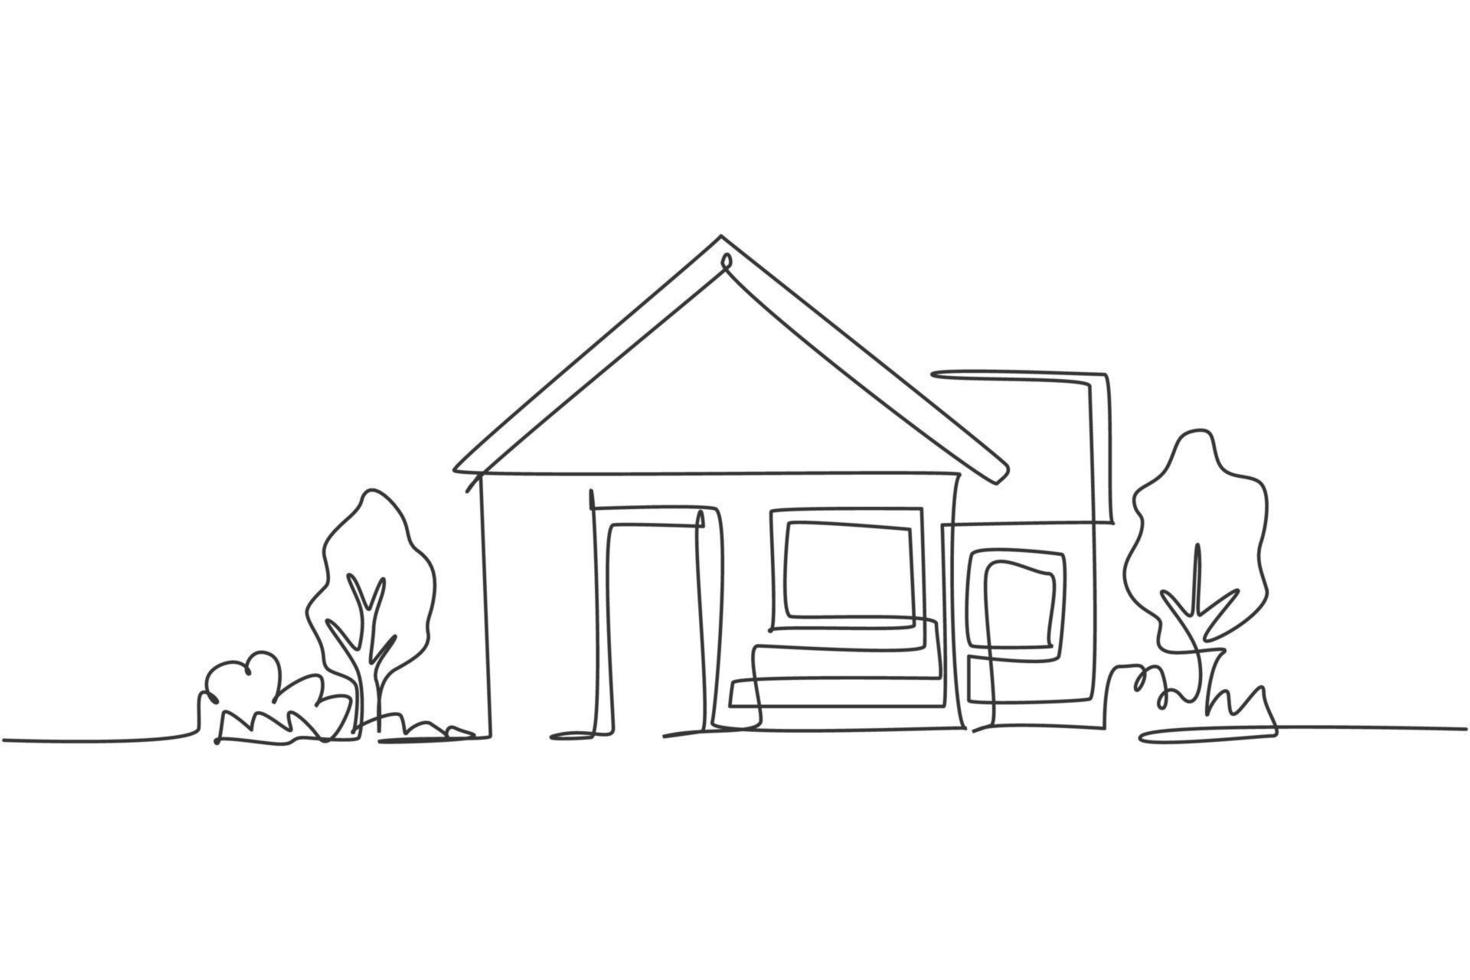 kontinuerlig enradsteckning av grönt litet hus med trädgårdsträd i byn. natur hem arkitektur handritad minimalistisk koncept. modern enkel linje rita design vektor grafisk illustration